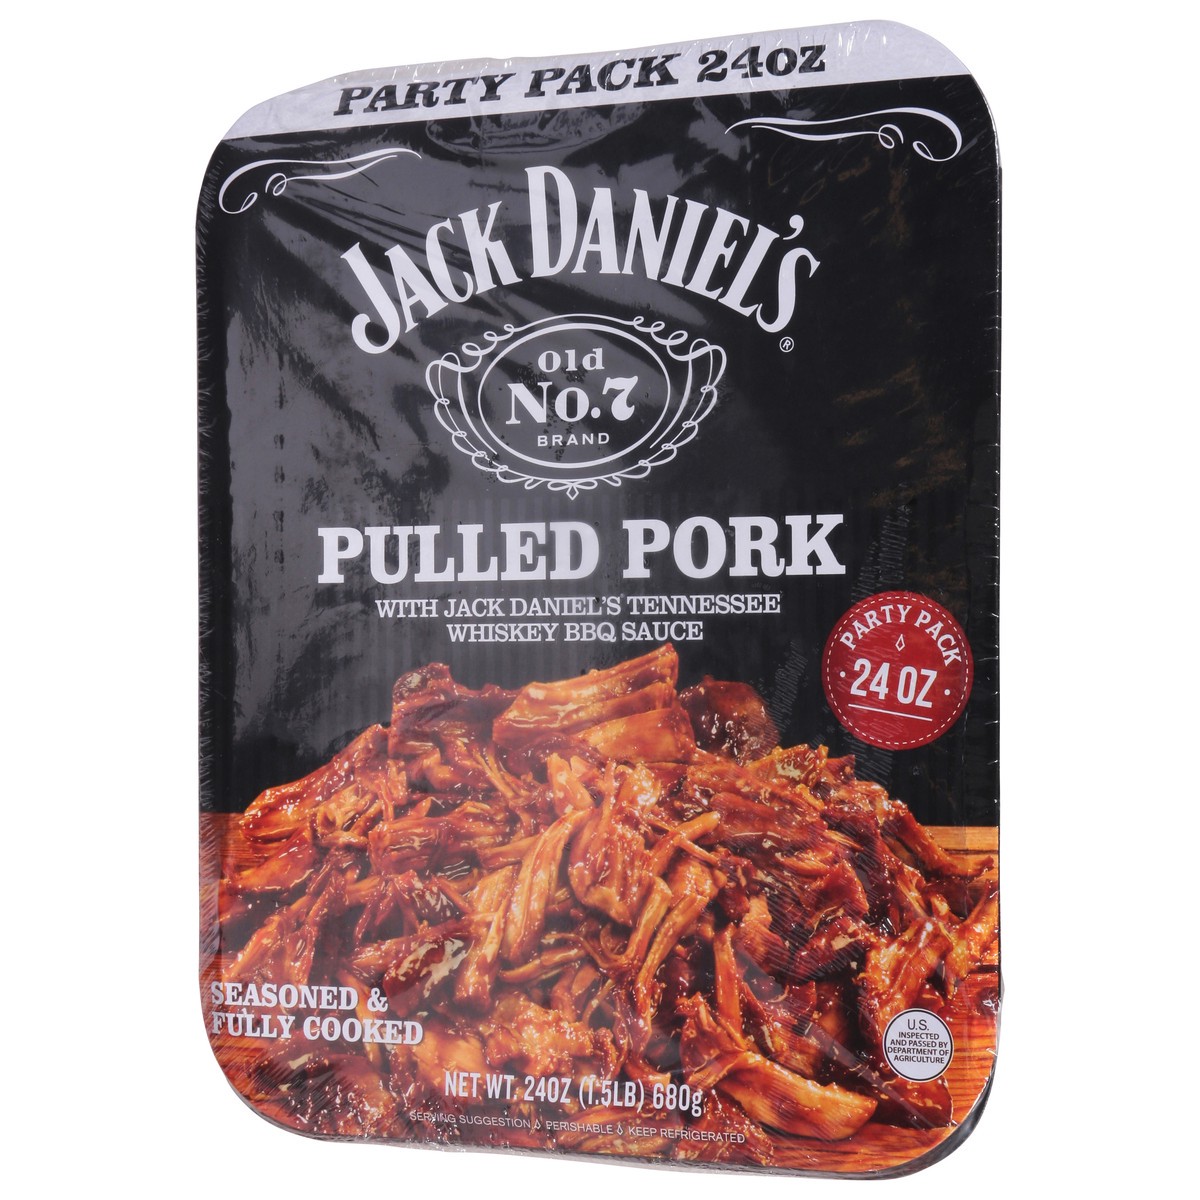 slide 5 of 12, Jack Daniel's Pulled Pork Party Pack 24 oz, 24 oz